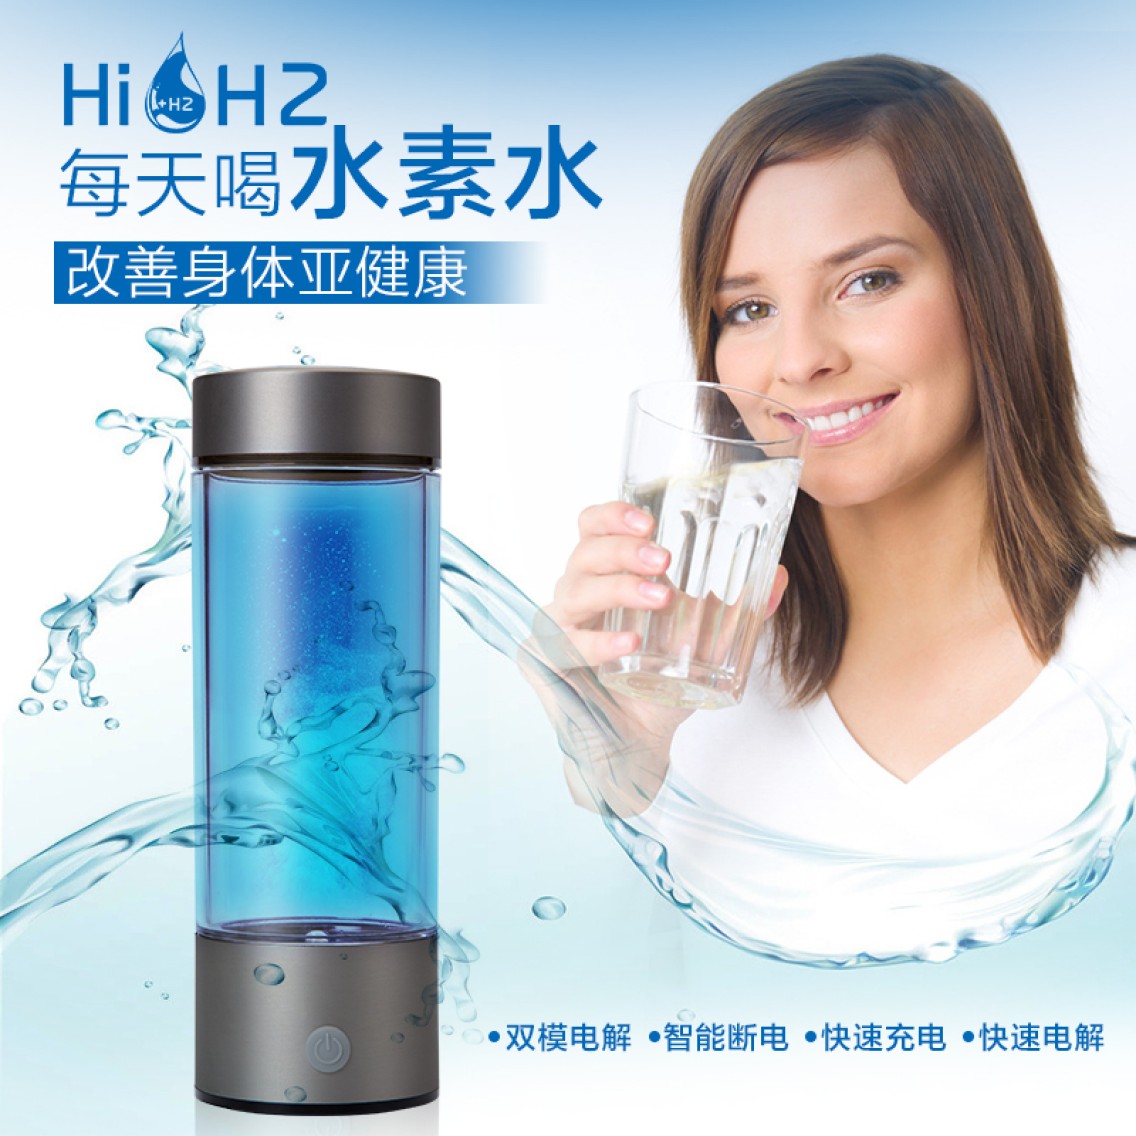 HiH2简约富氢水杯厂家 水素水杯批发